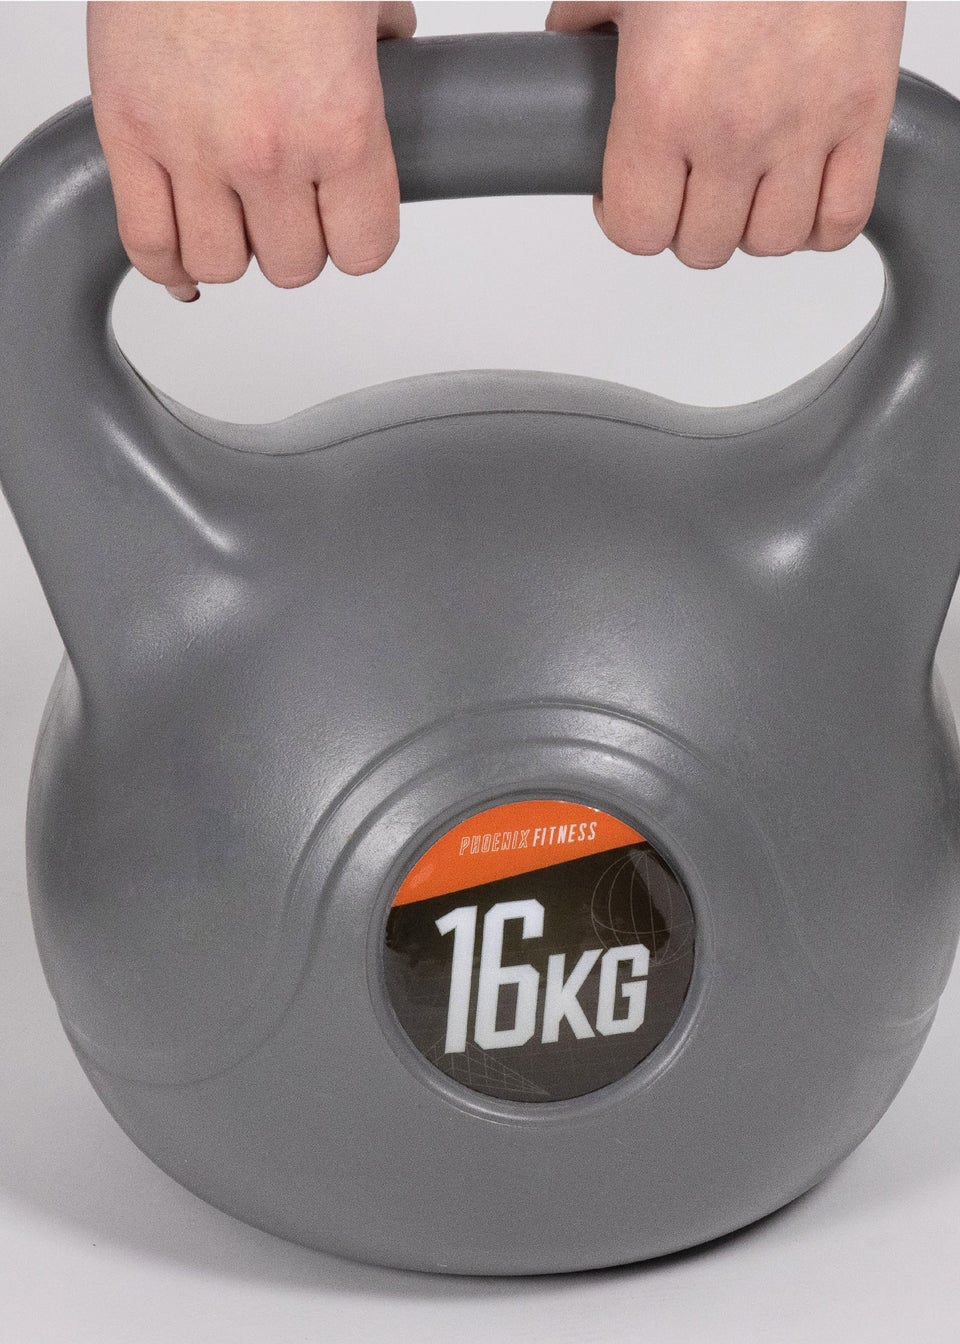 Phoenix Fitness Kettle Bell (16Kg)